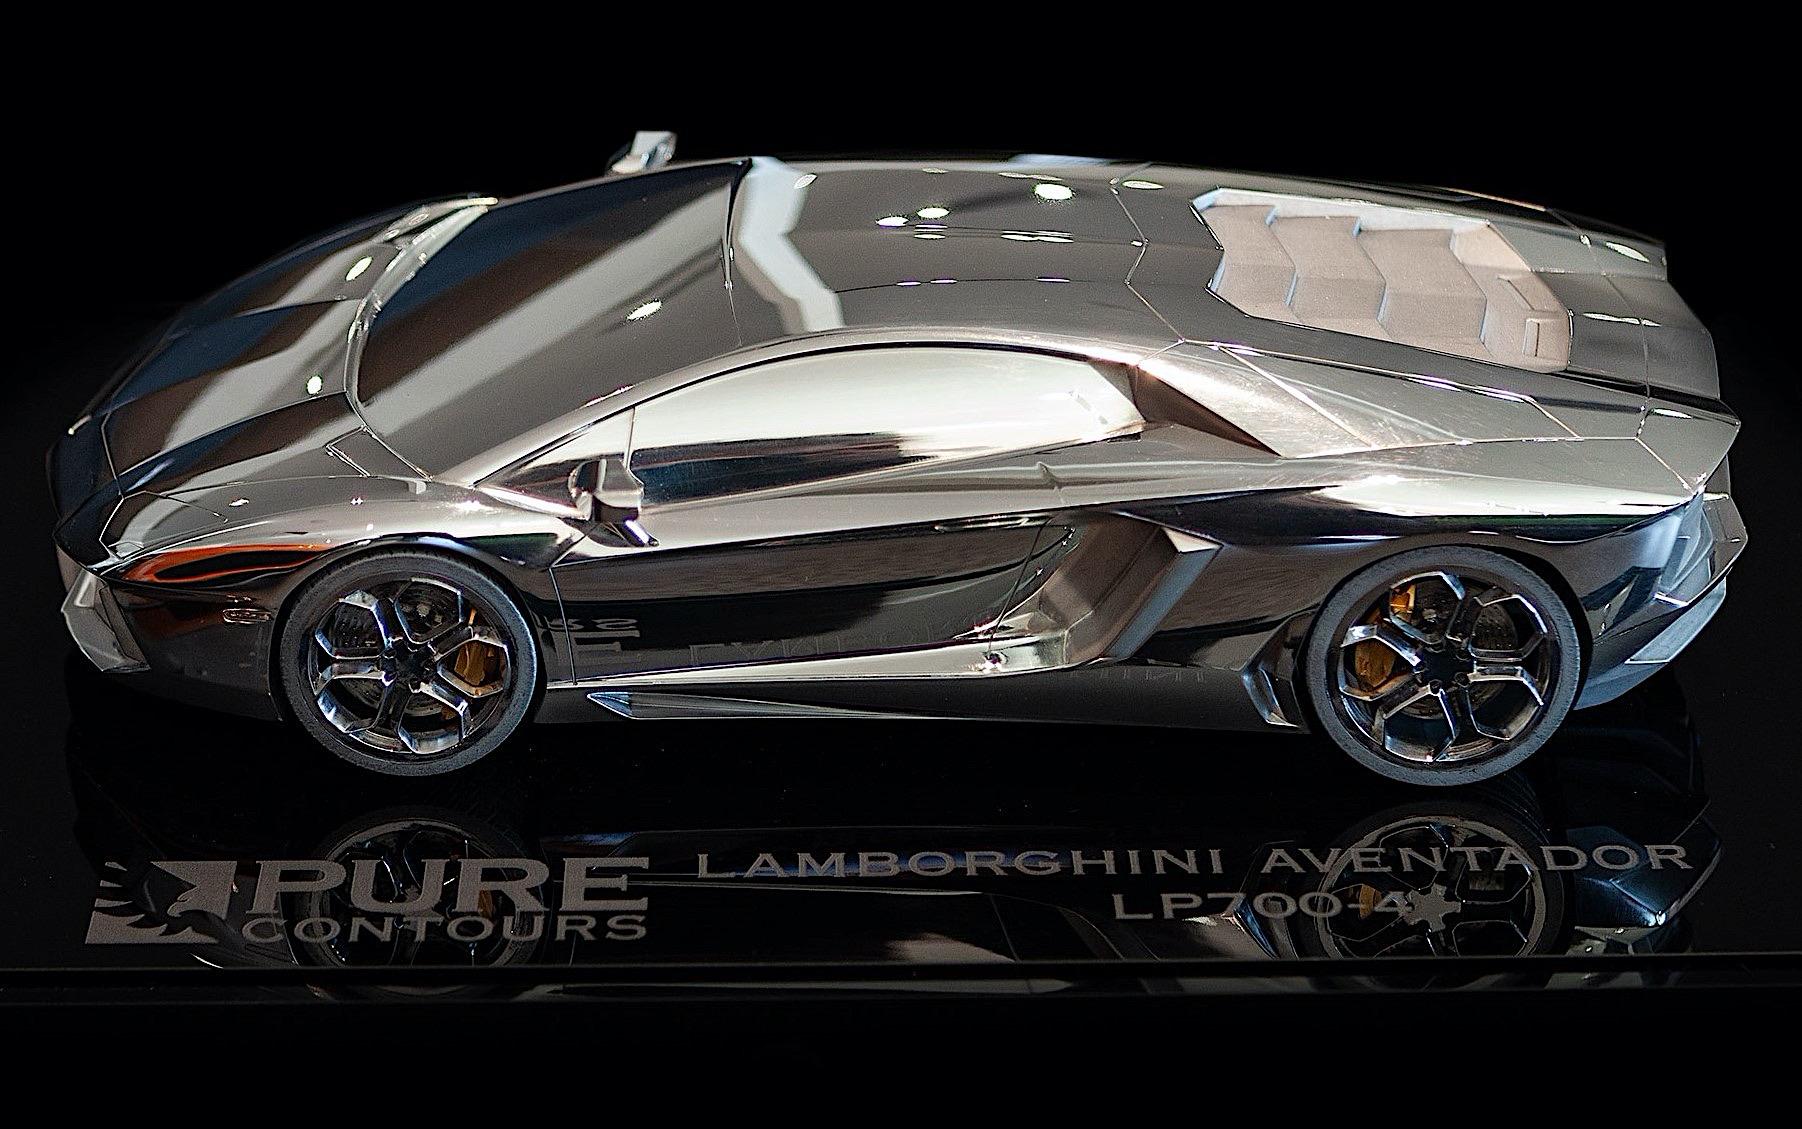 Unique Lamborghini Aventador LP 700-4 sculpture